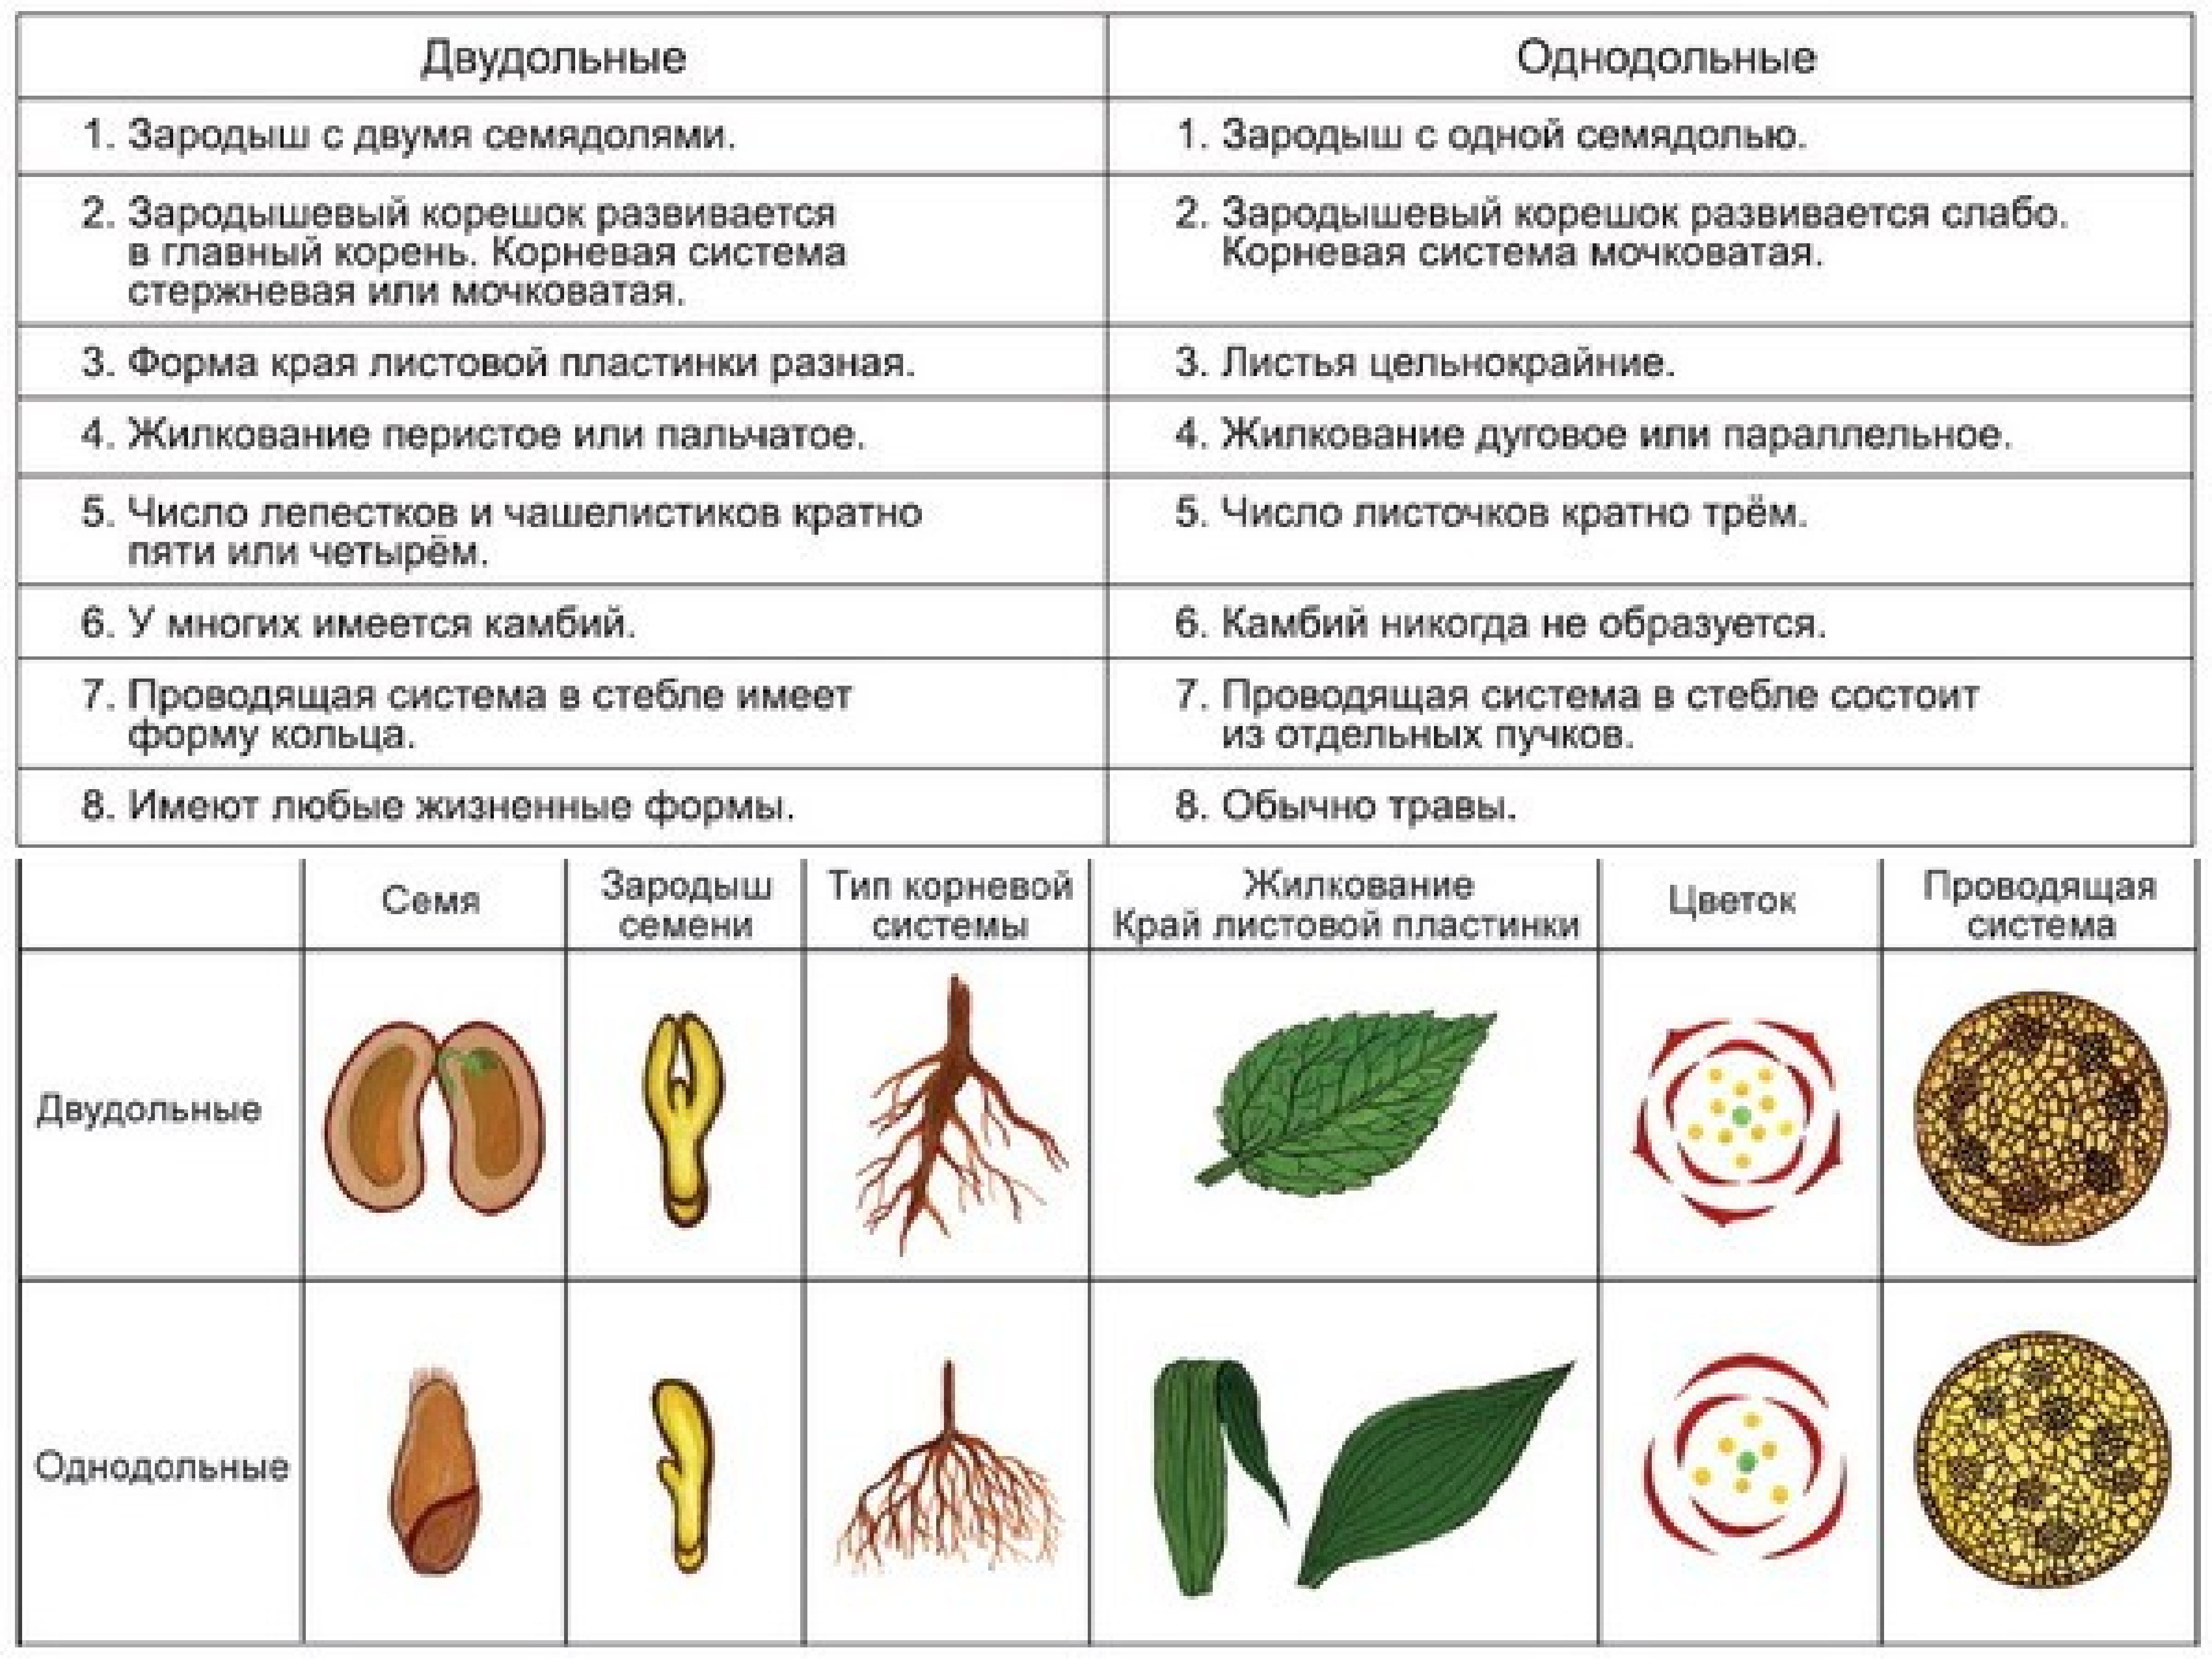 Признаки двудольных. Отличия однодольных и двудольных растений таблица. Характерные признаки двудольных и однодольных растений таблица. Различия однодольных и двудольных растений таблица. Однодольные и двудольные растения признаки таблица.